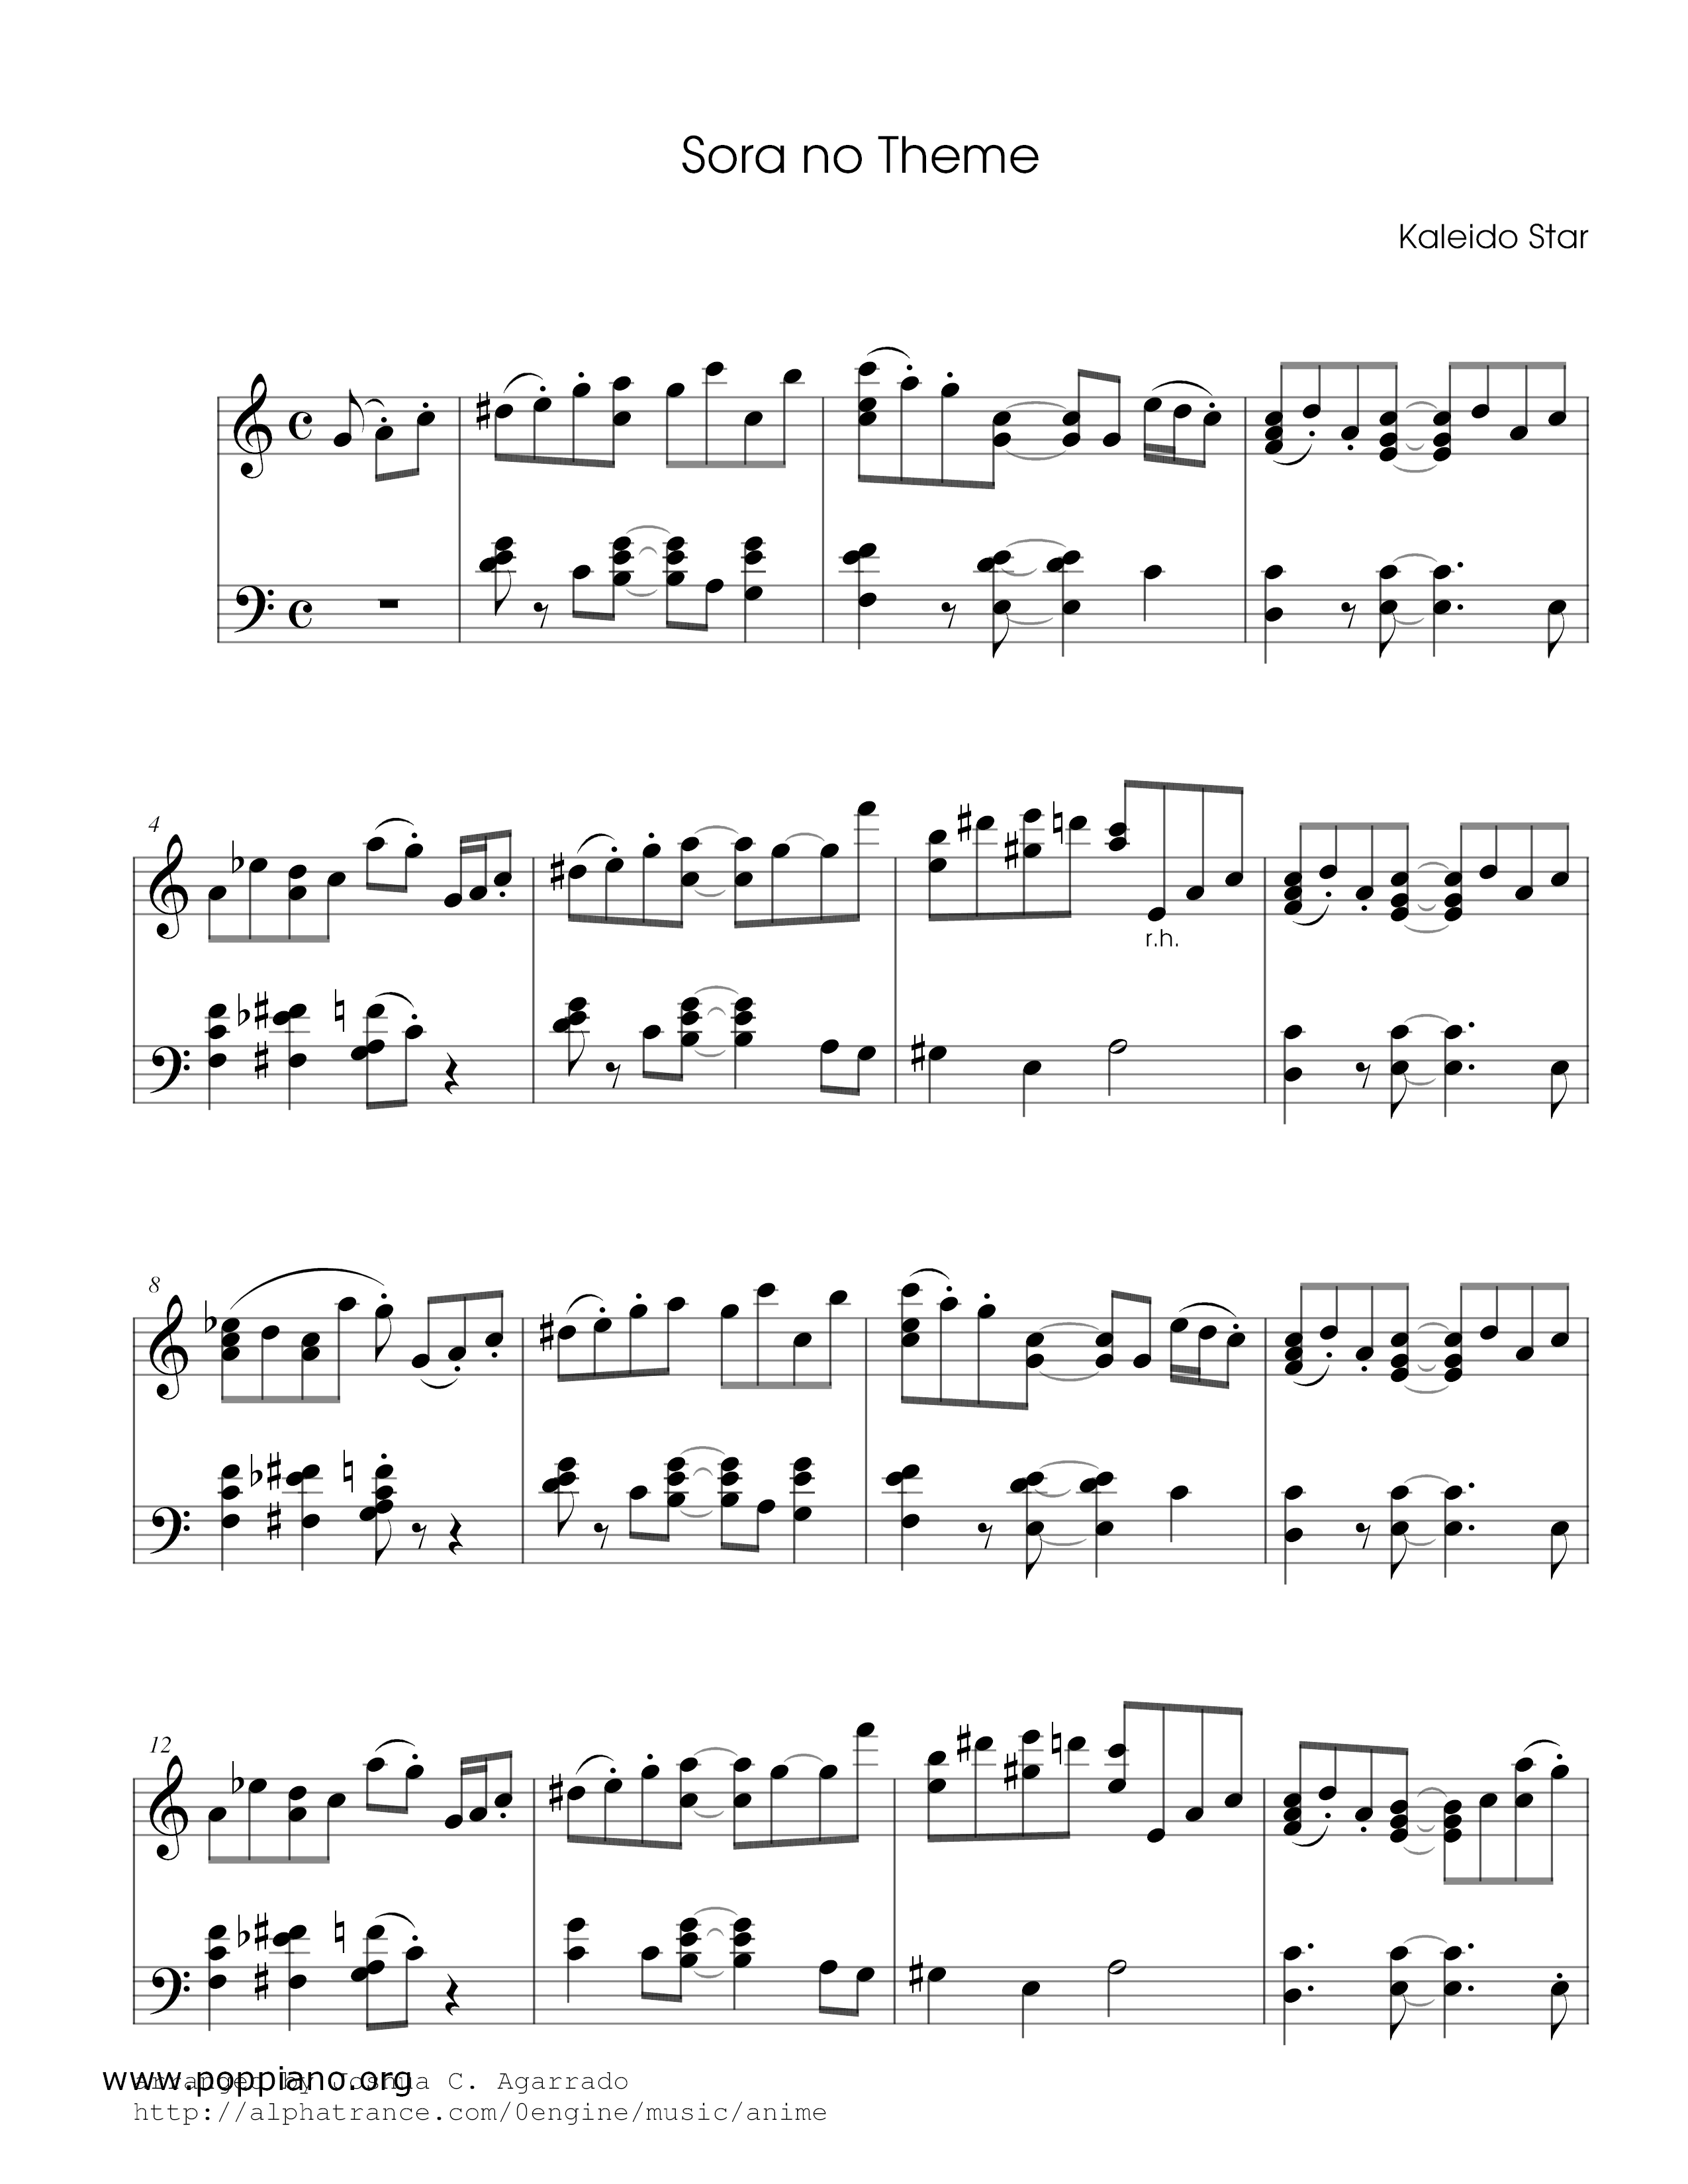 Sora's Theme [Kaleido Star] Score